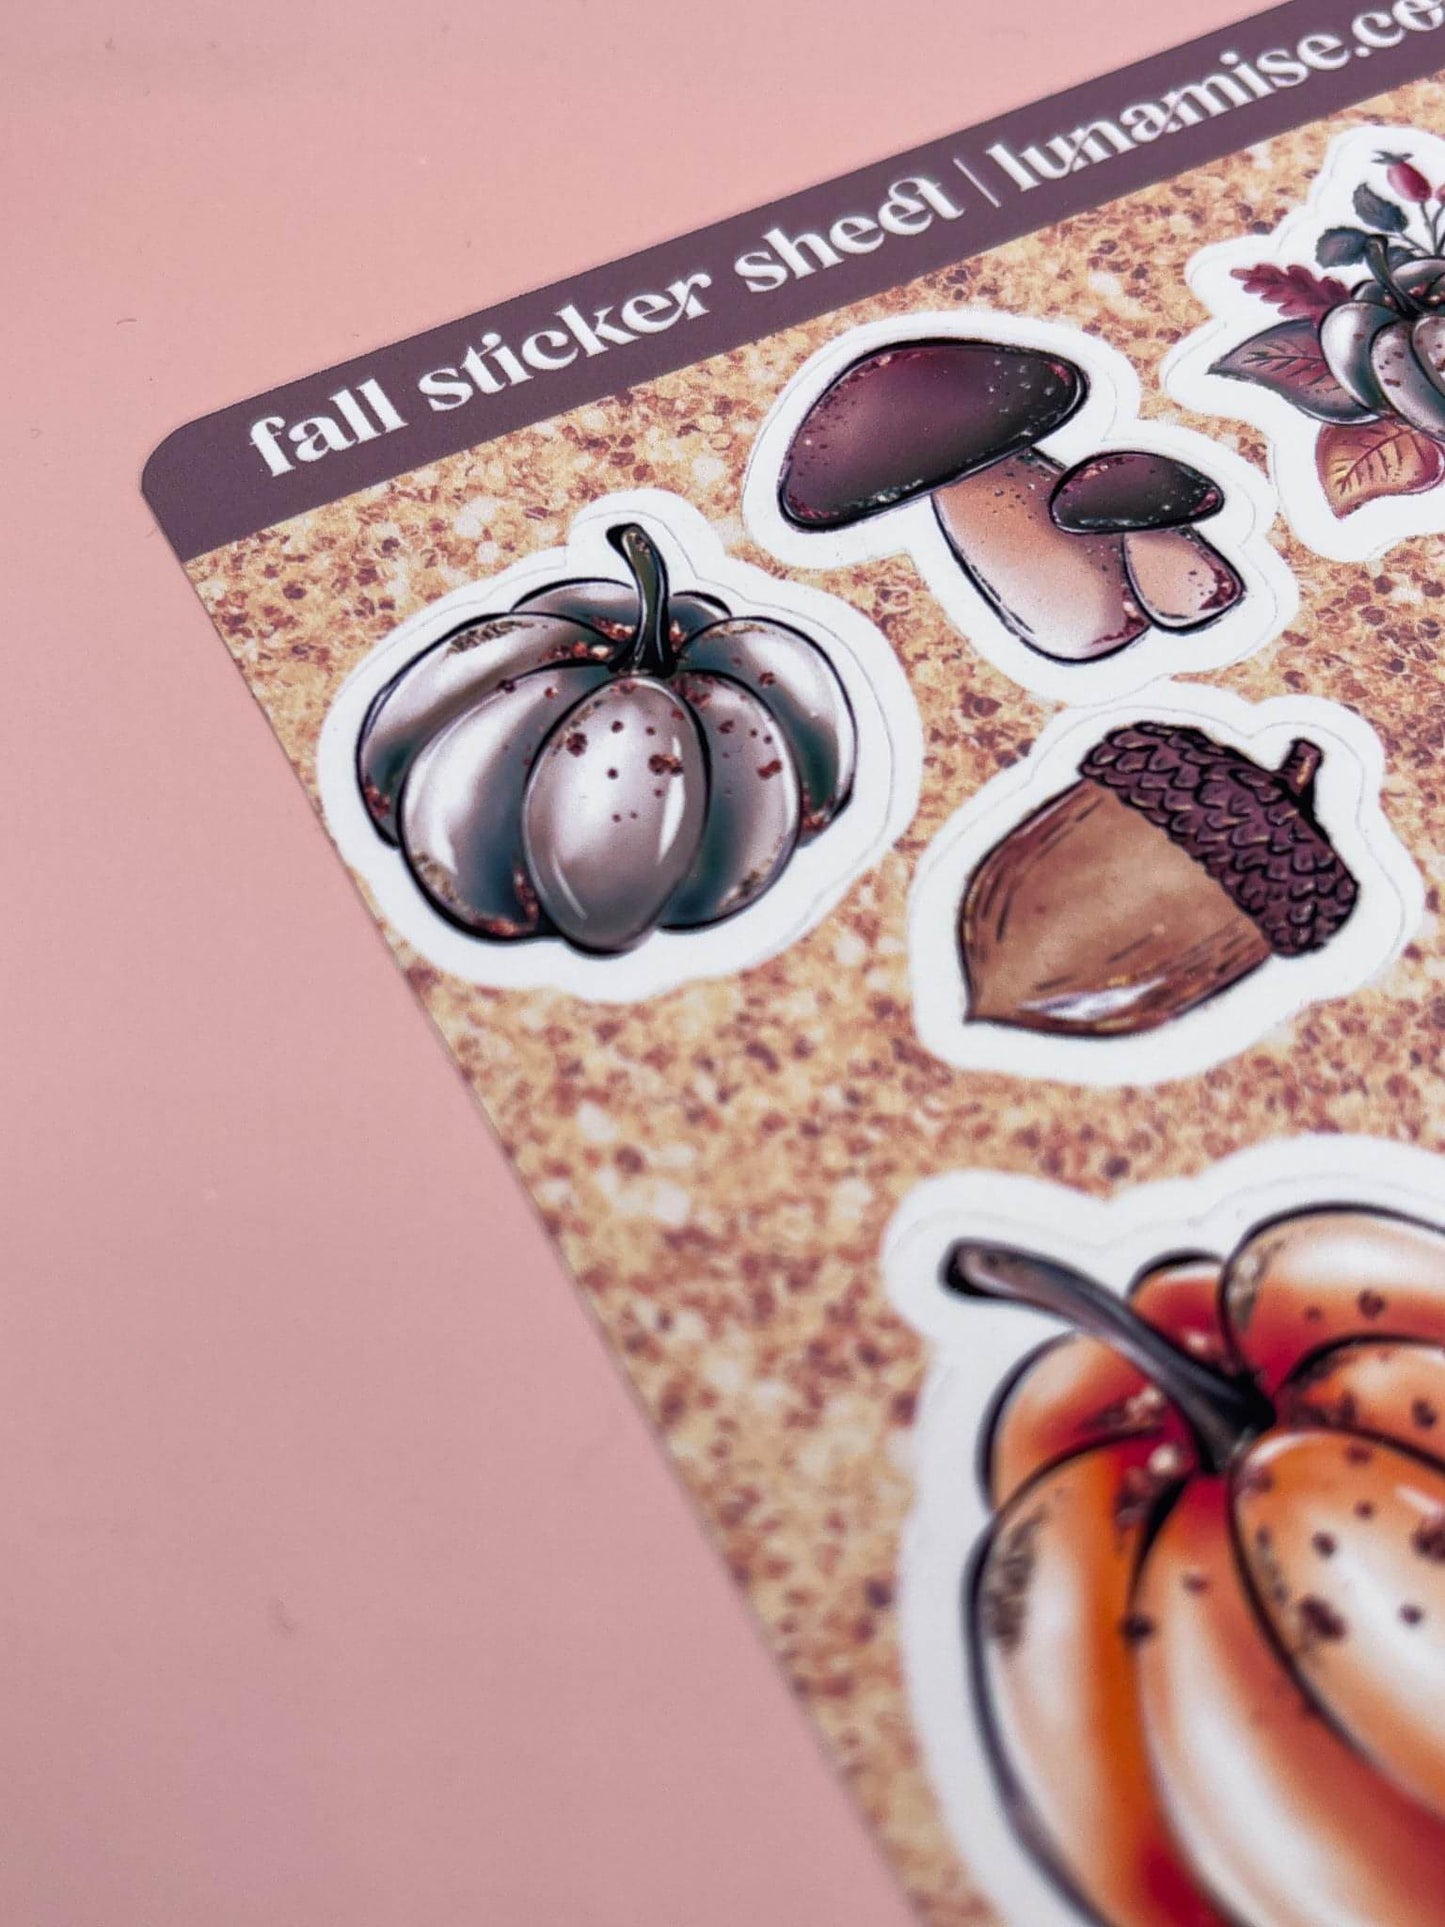 Fall Sticker Sheet